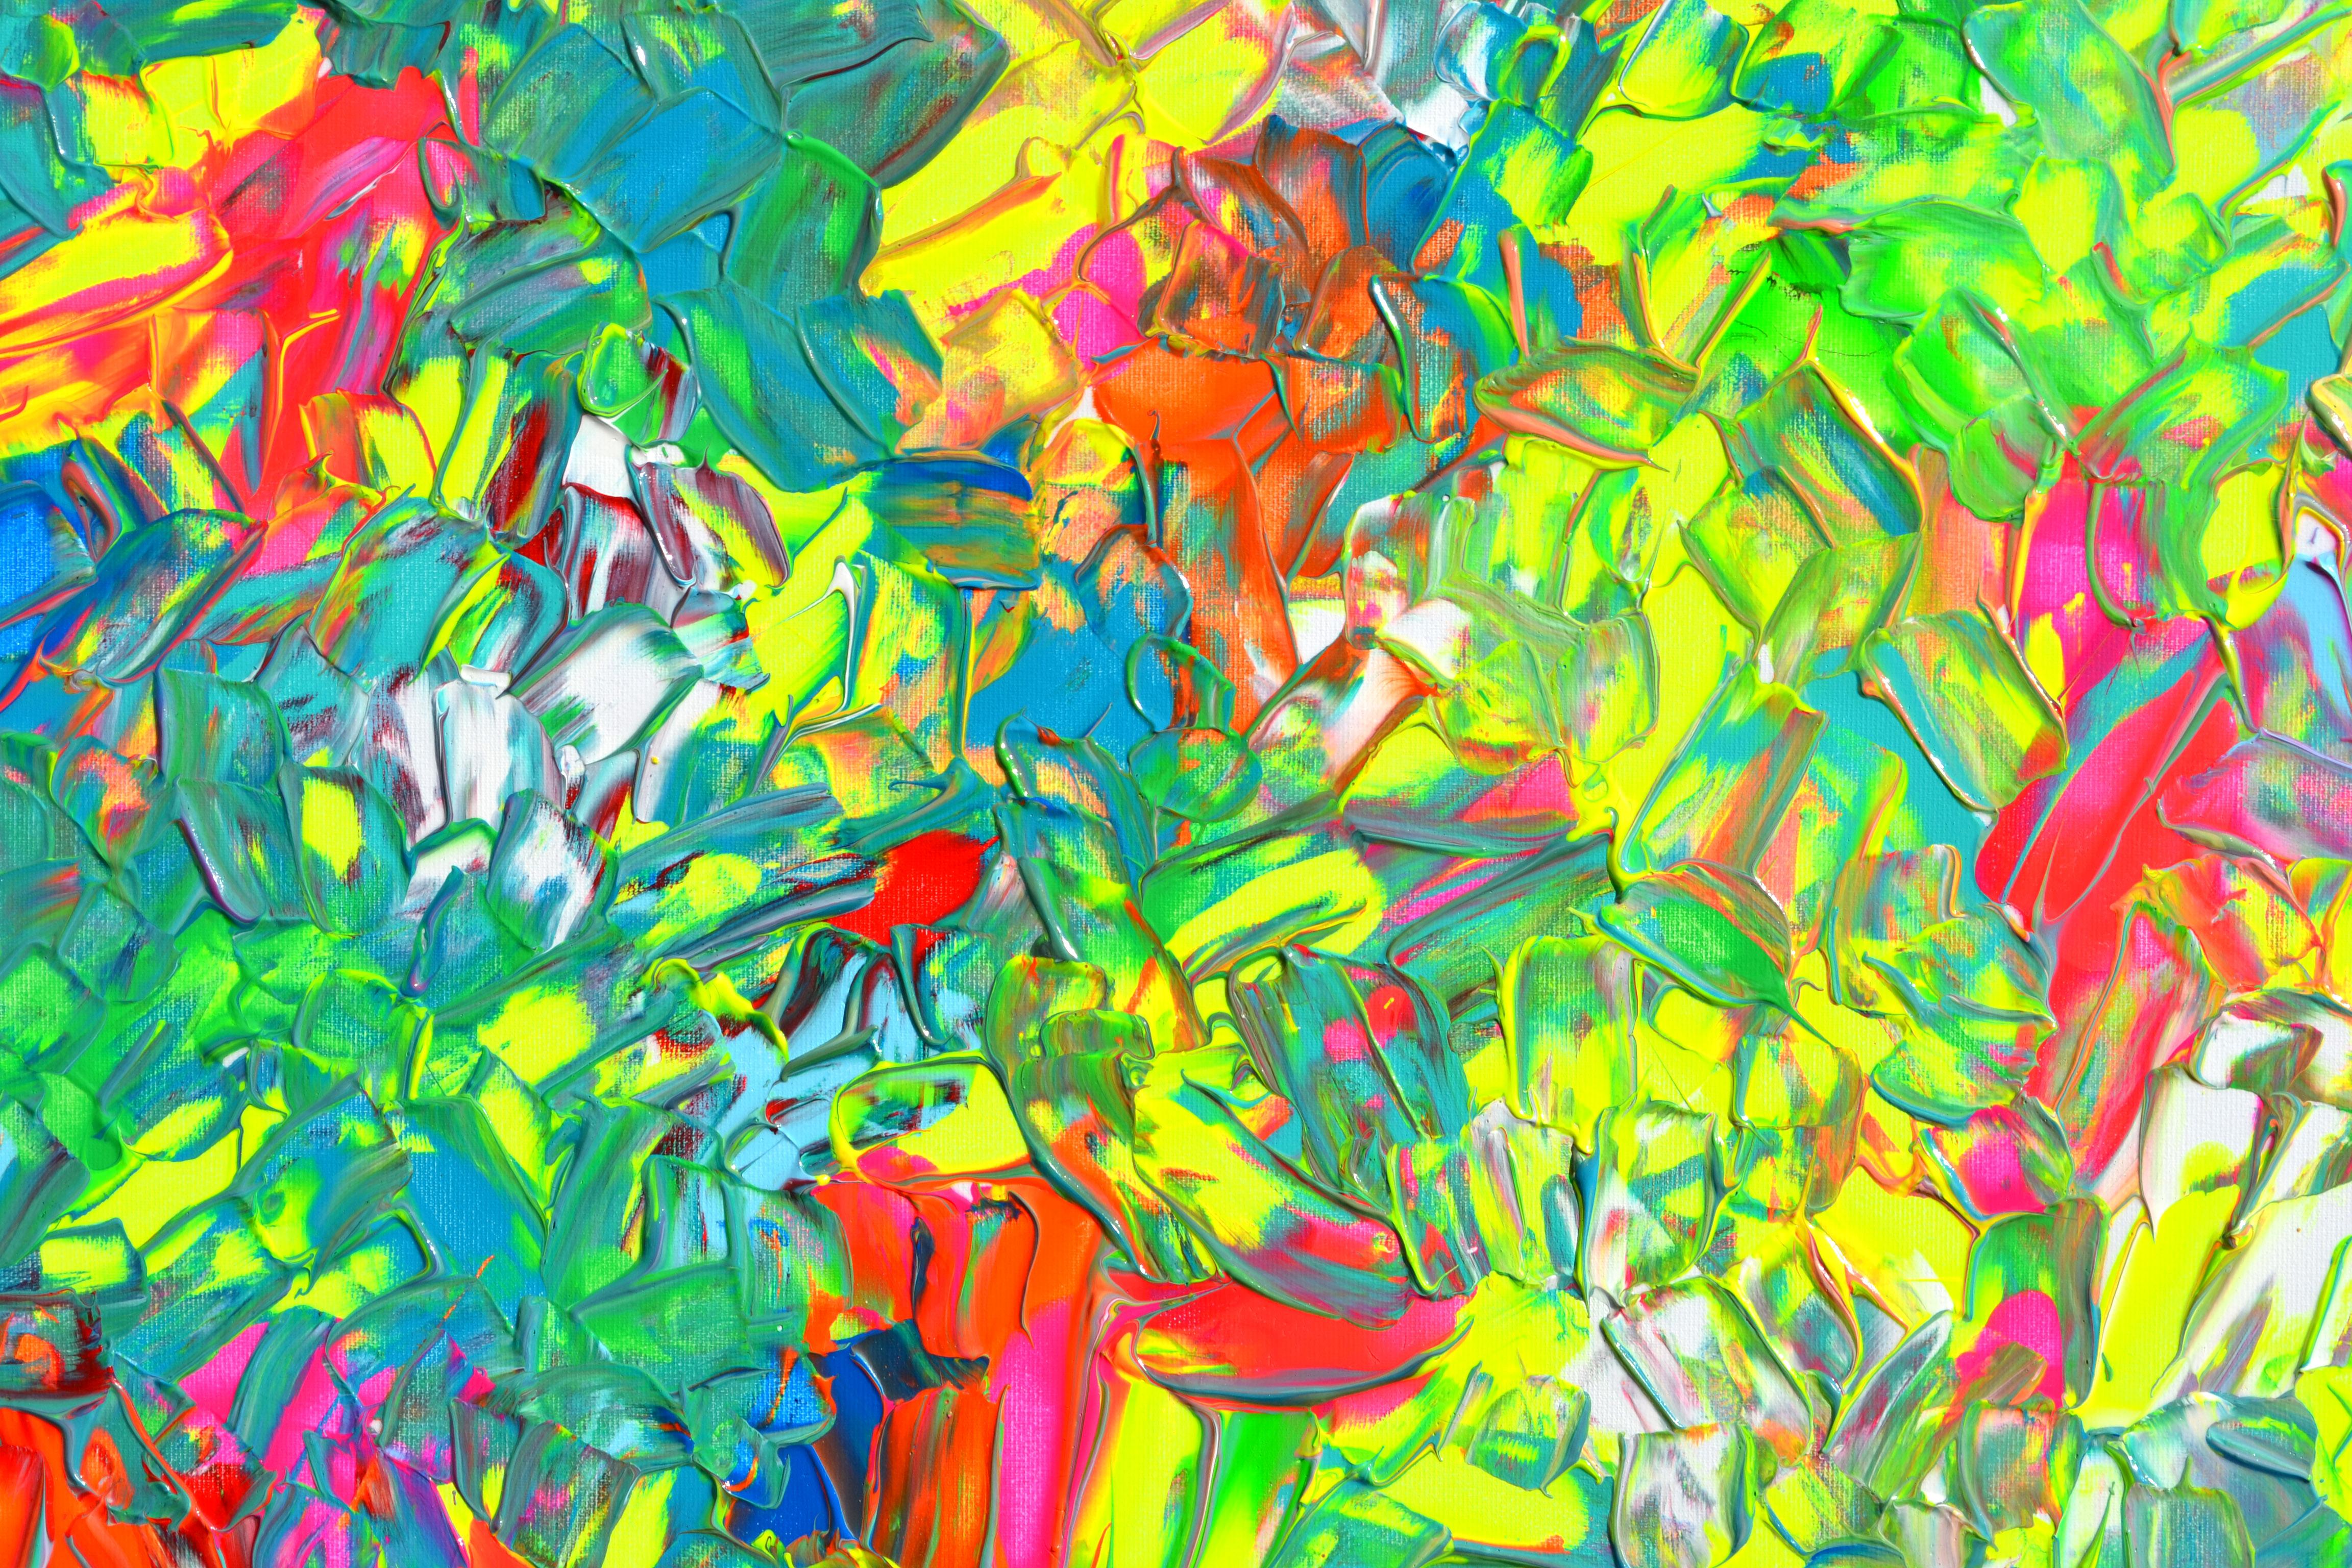 Ein sehr schönes großes, farbenfrohes, abstraktes Gemälde mit vielen Neon-Nuancen, stark strukturiert mit Reliefs aus Palettenmesser, lebendig und emotional.
HÄNGEFERTIG - GALERIEQUALITÄT
Es geht um Farben, Glück und Freiheit!
Abmessungen: 140x80X2